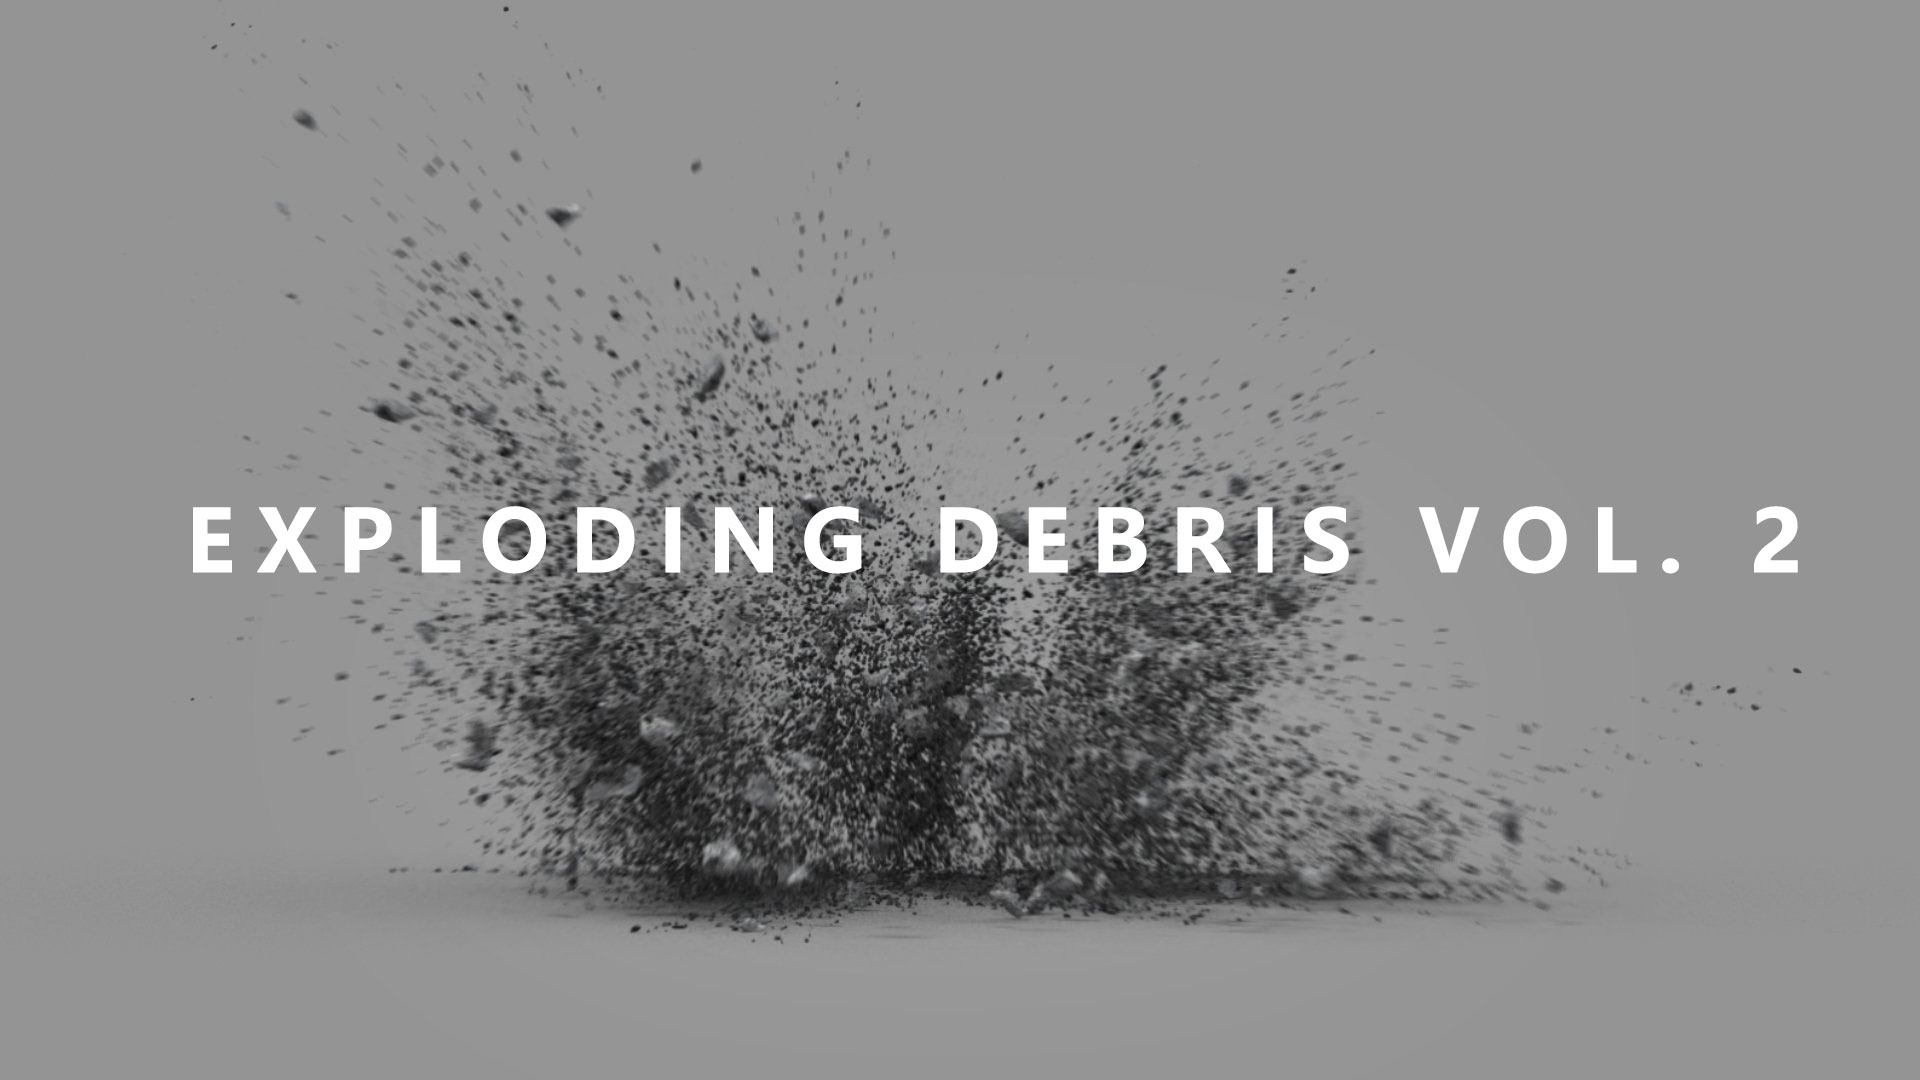 20个2K爆炸混凝土碎屑元素视频素材 EXPLODING DEBRIS VOL. 2（含Alpha通道）。